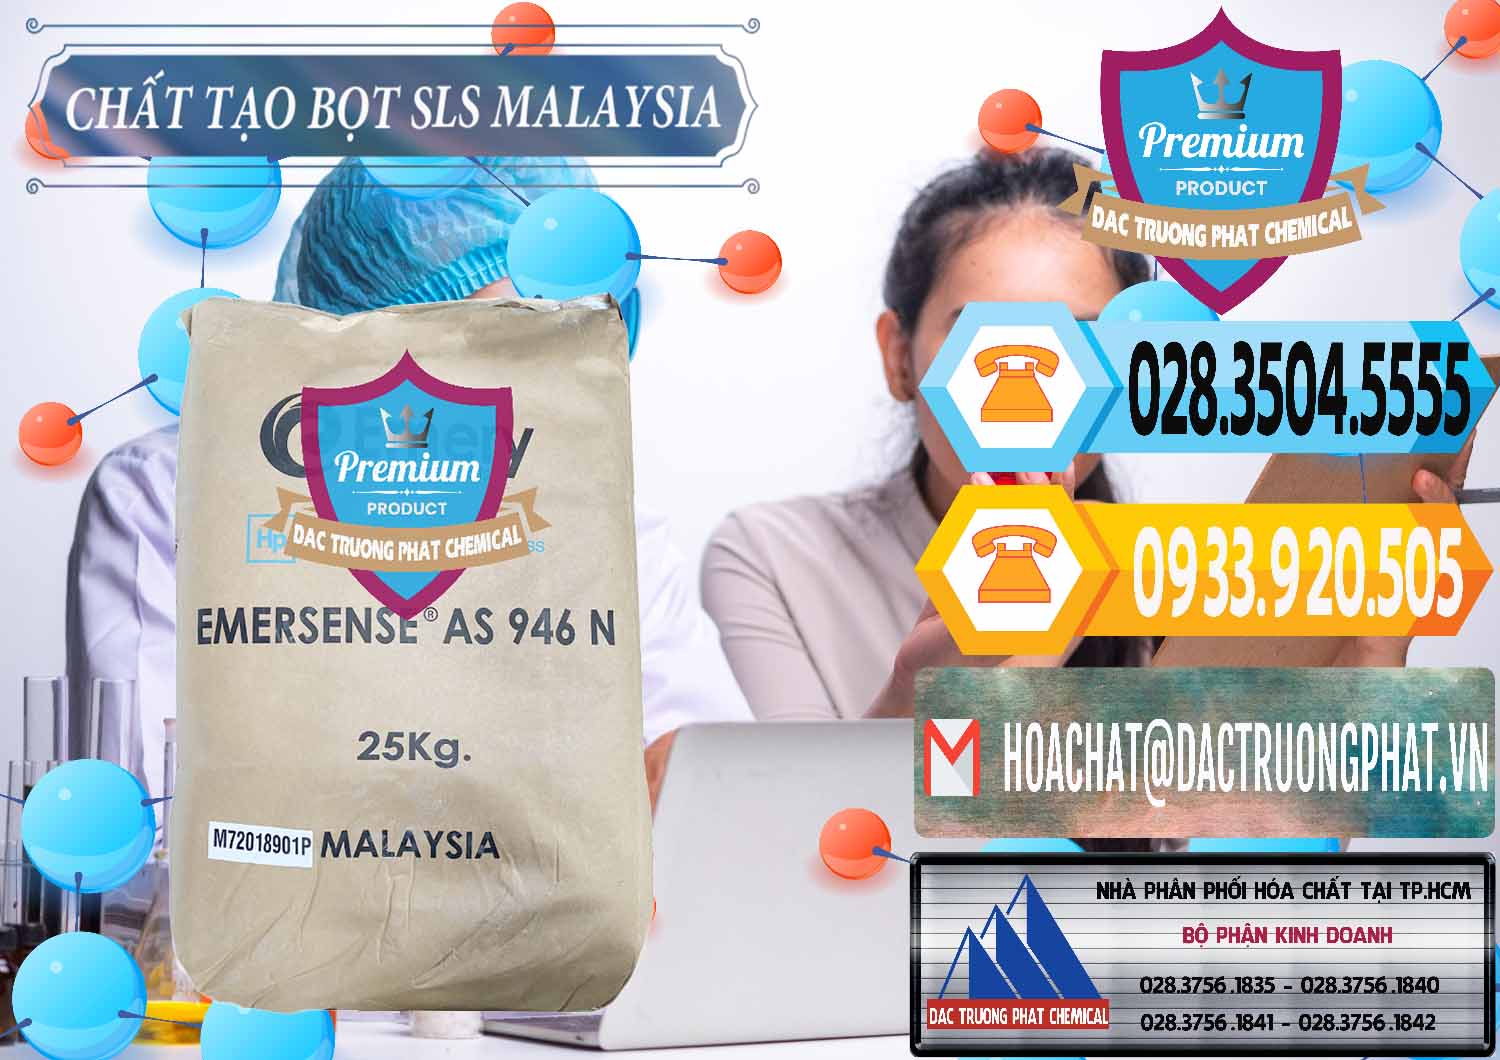 Công ty bán và phân phối Chất Tạo Bọt SLS Emery - Emersense AS 946N Mã Lai Malaysia - 0423 - Cty chuyên kinh doanh _ cung cấp hóa chất tại TP.HCM - hoachattayrua.net